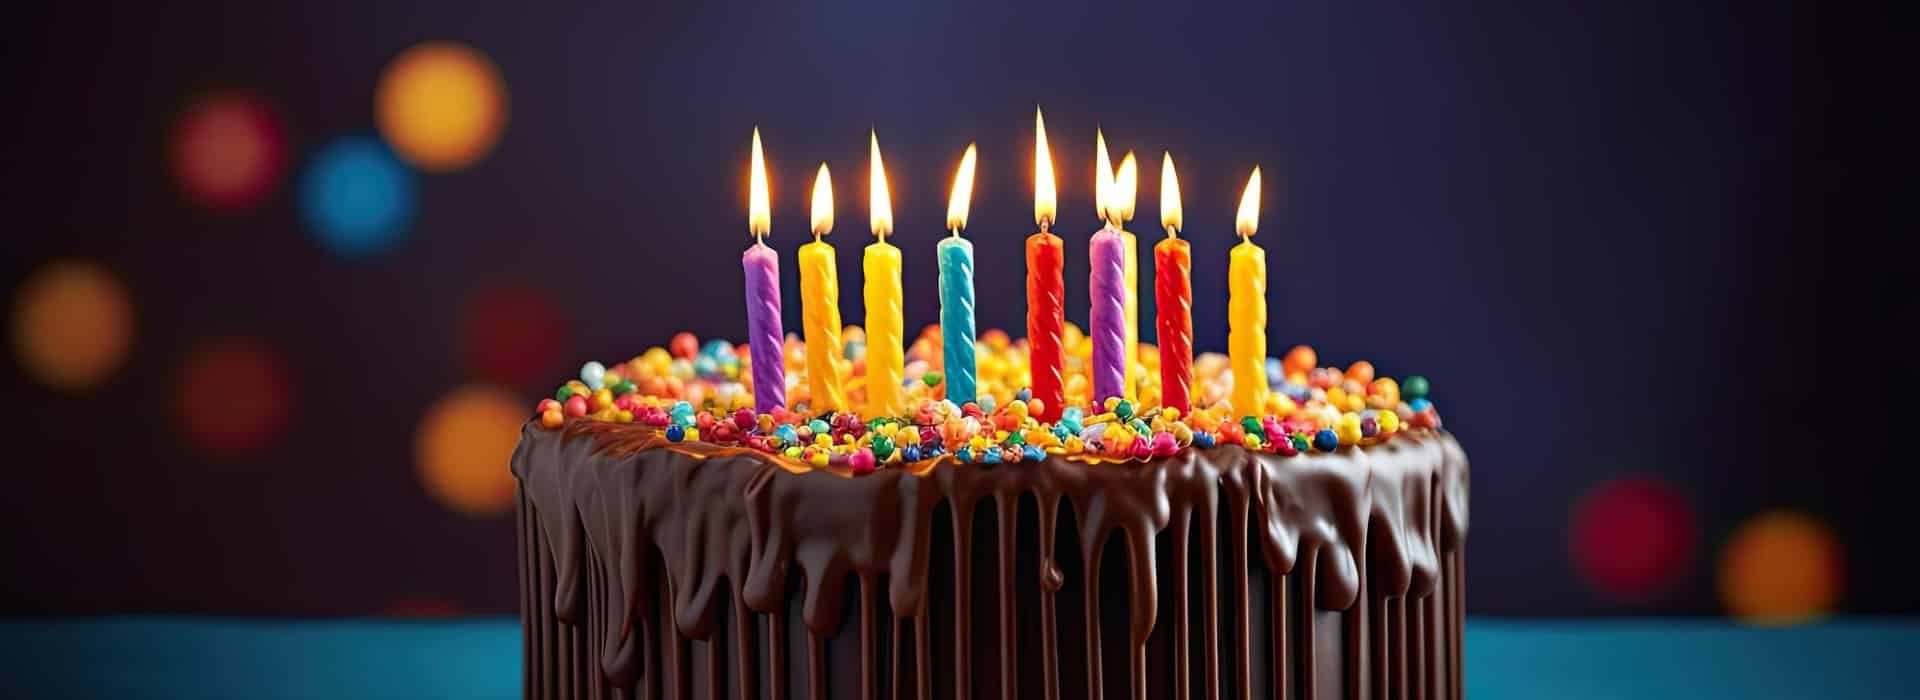 El curioso origen de soplar velas por el cumpleaños